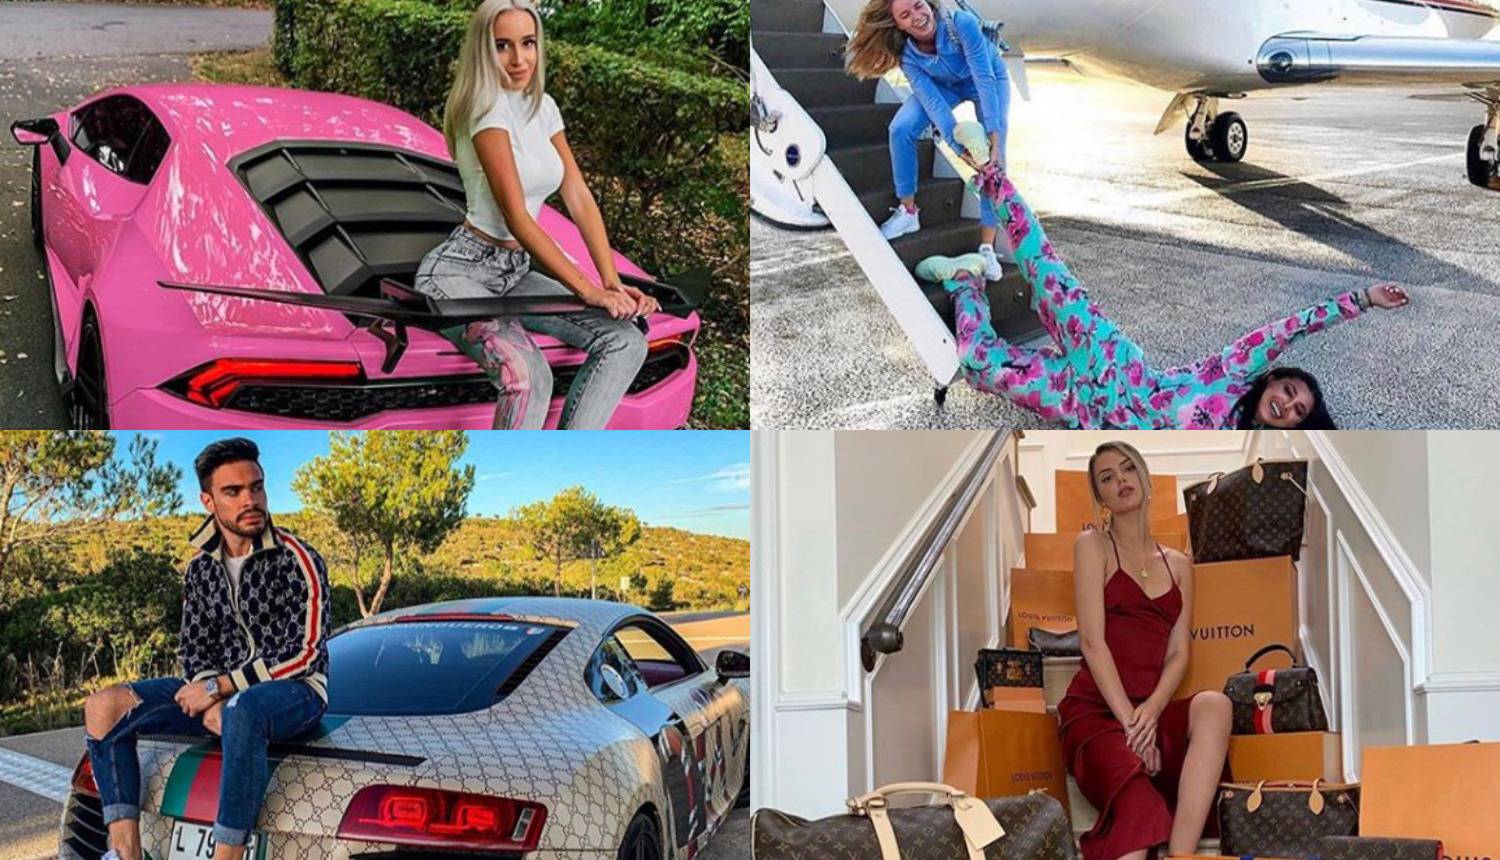 Bogati klinci s Instagrama: Da nema luksuza, ne bi bio Božić!